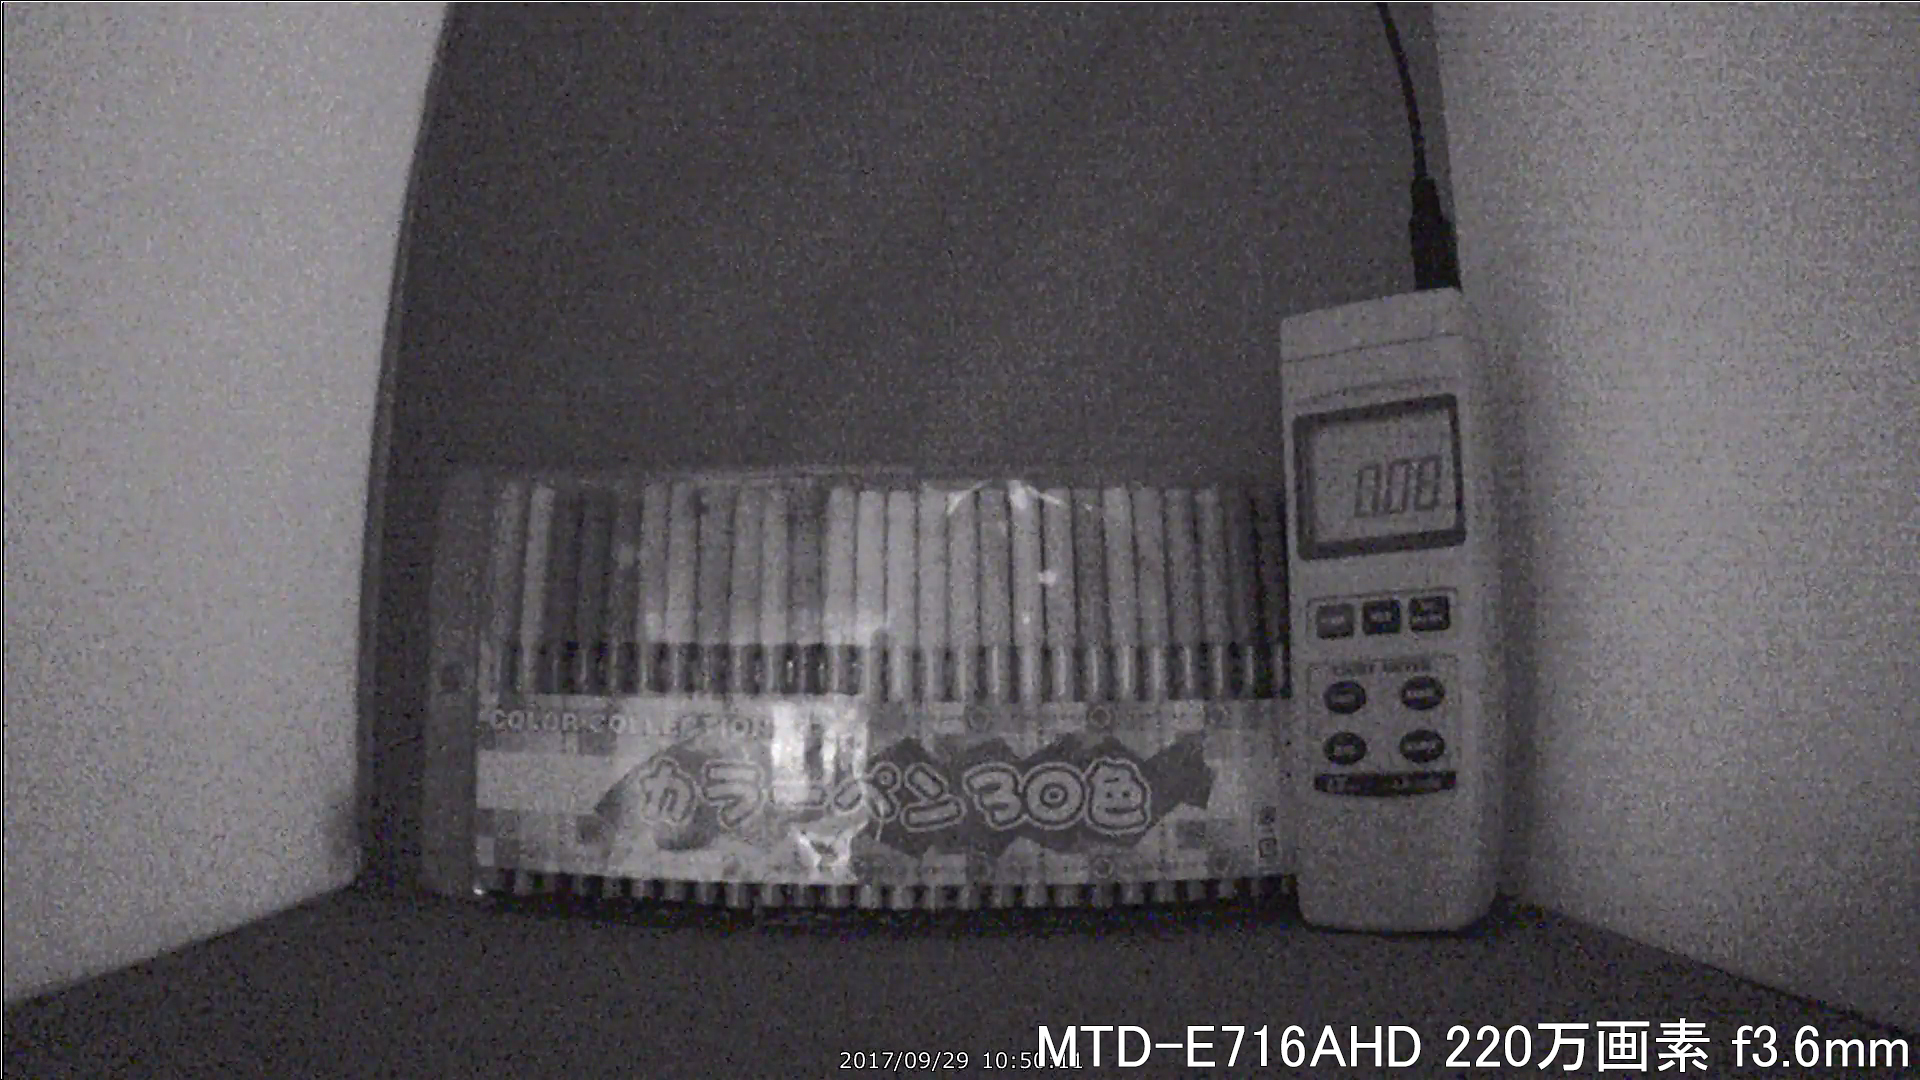 MTD-E716AHD カメラから約40cm離れた被写体を低照度撮影